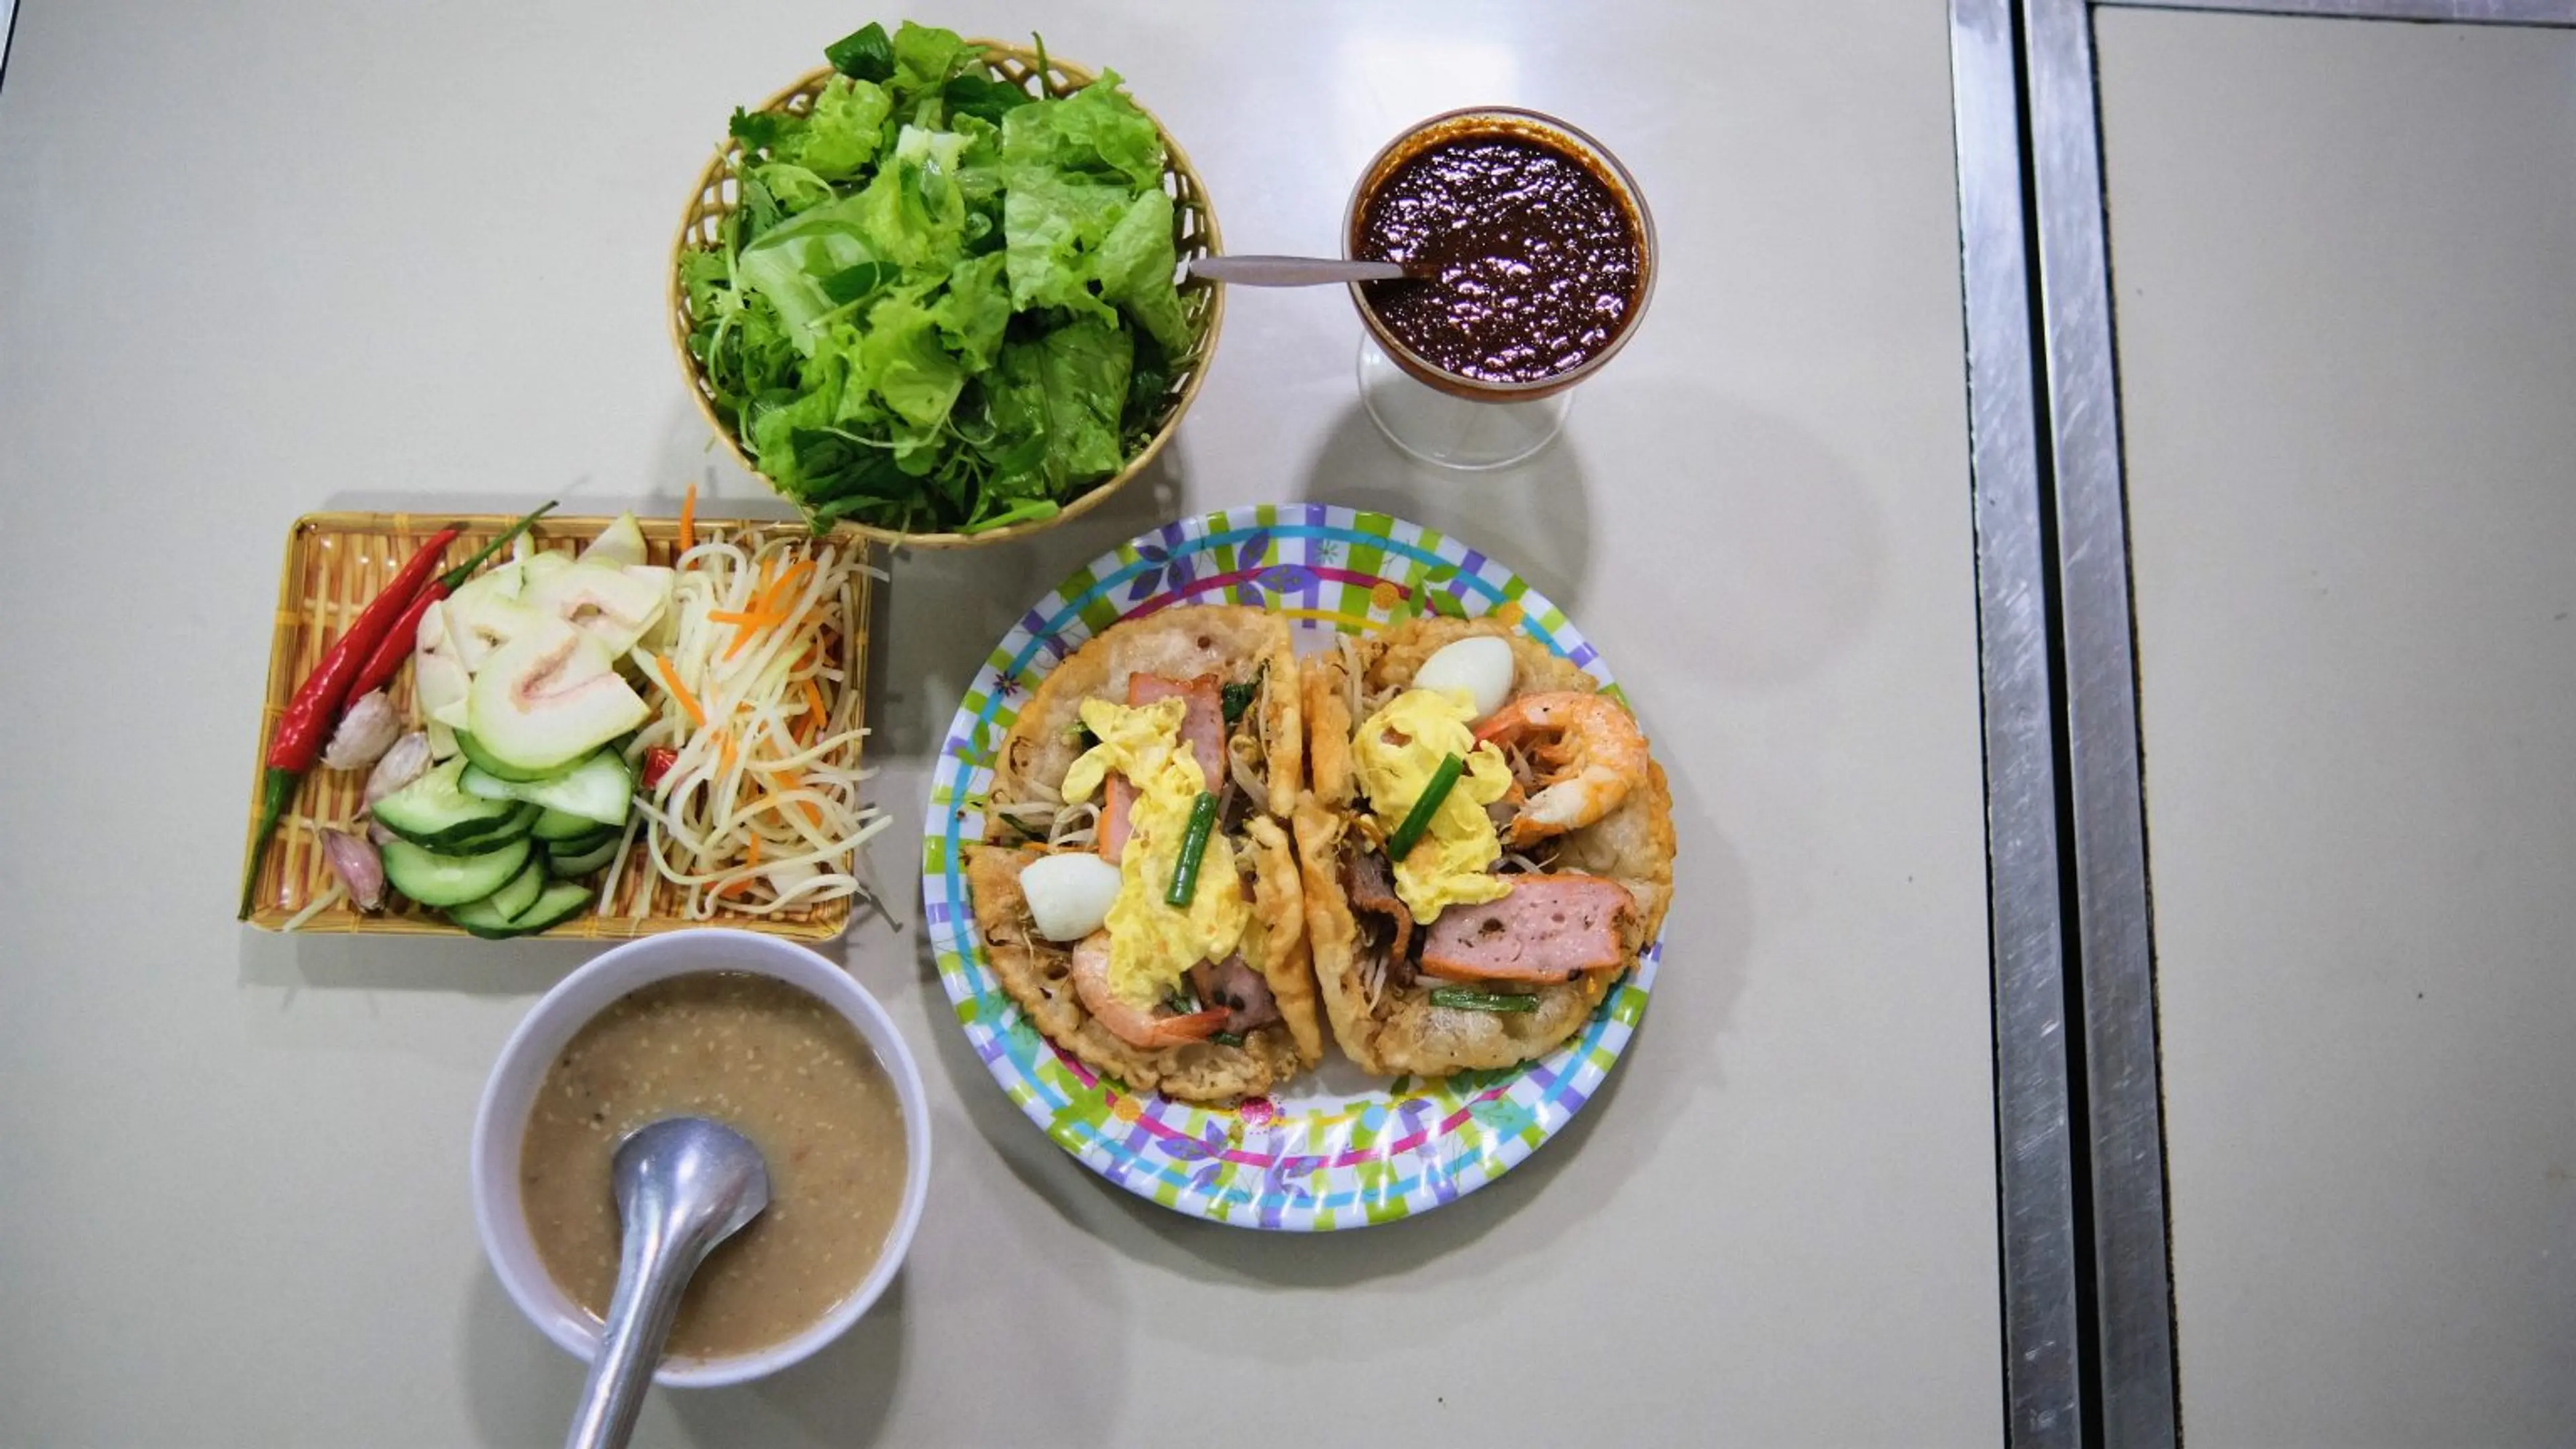 Banh Khoai - Hue crispy crepes